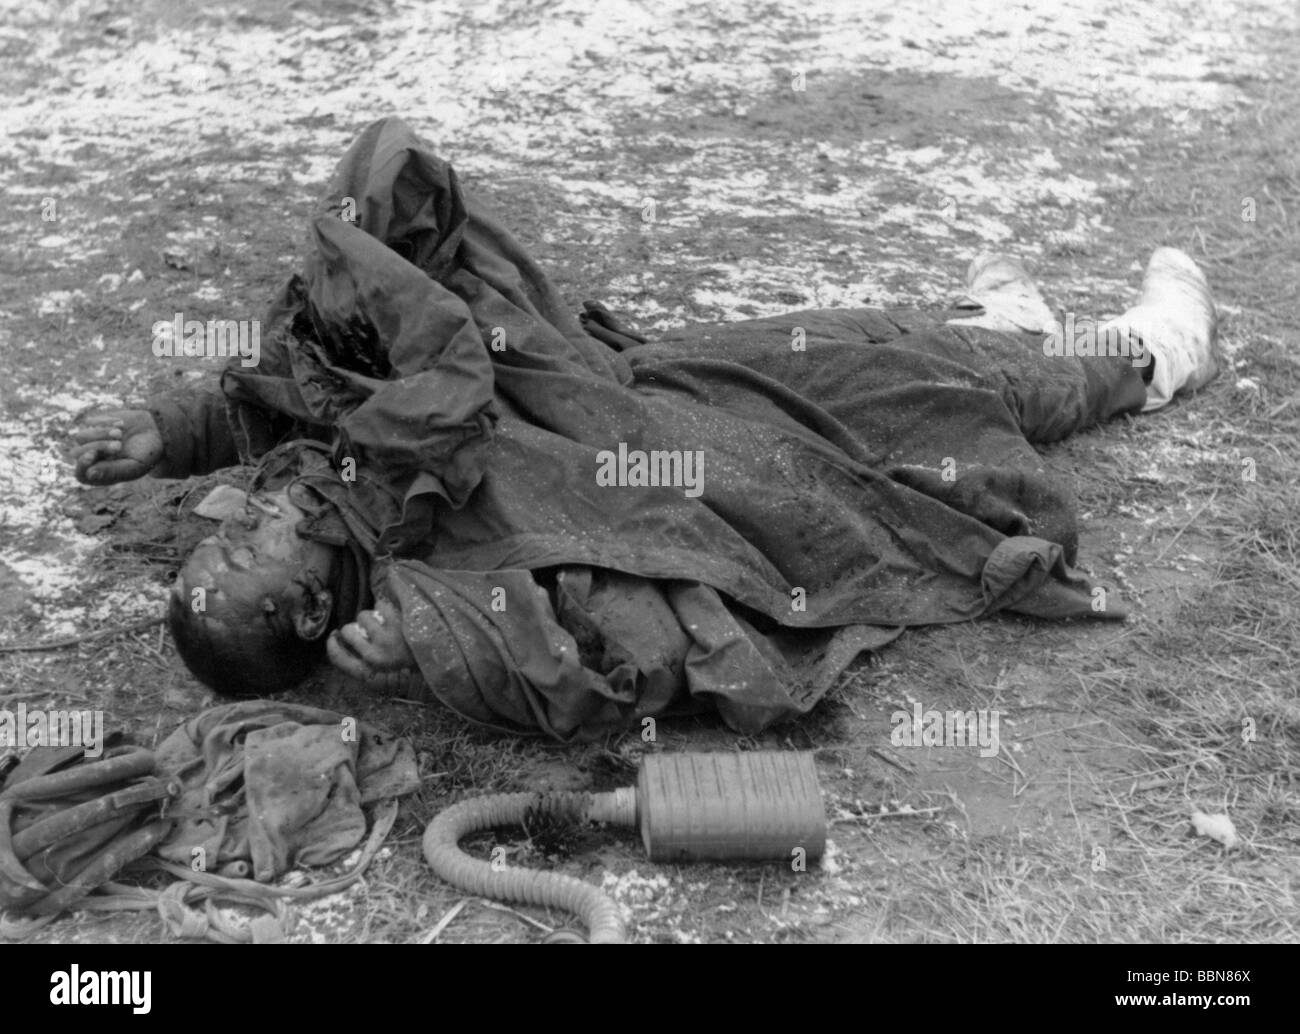 Événements, seconde Guerre mondiale / seconde Guerre mondiale, Russie, soldats tombés / corps morts, soldat soviétique tombé, vers 1942, Banque D'Images